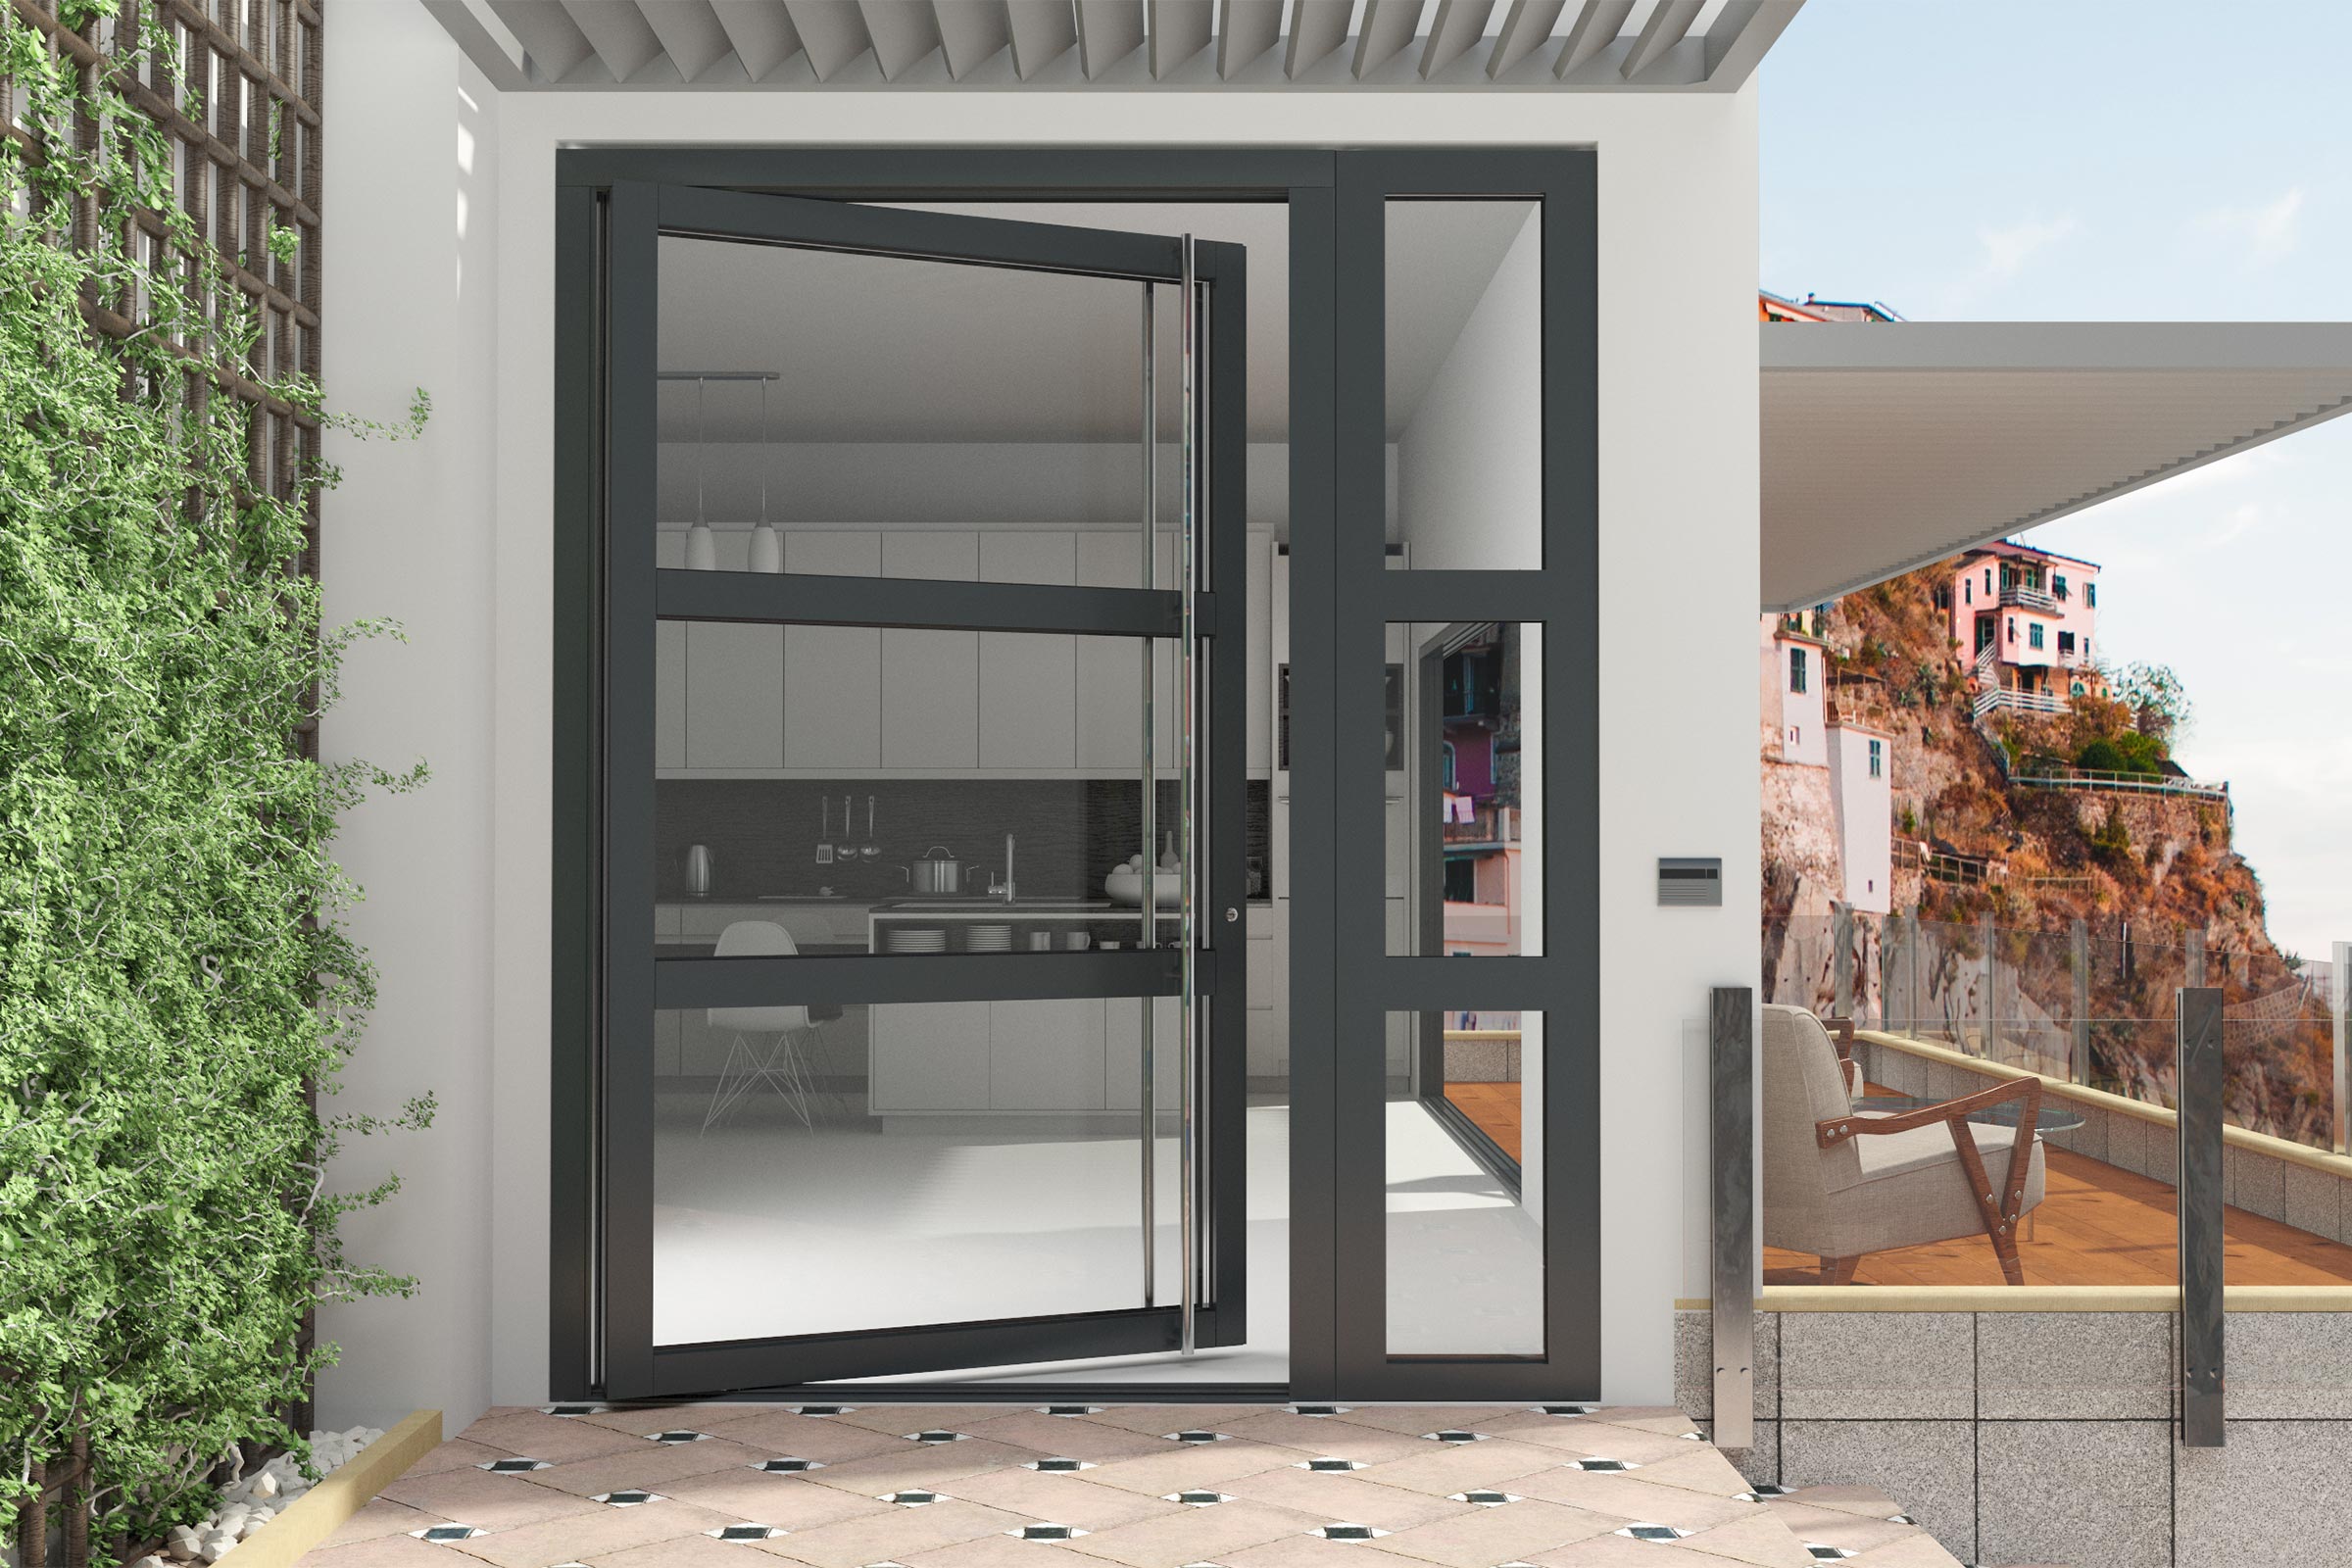 Aluminium Pivot Doors Door Design Pivot Doors Glass Entrance Doors | My ...